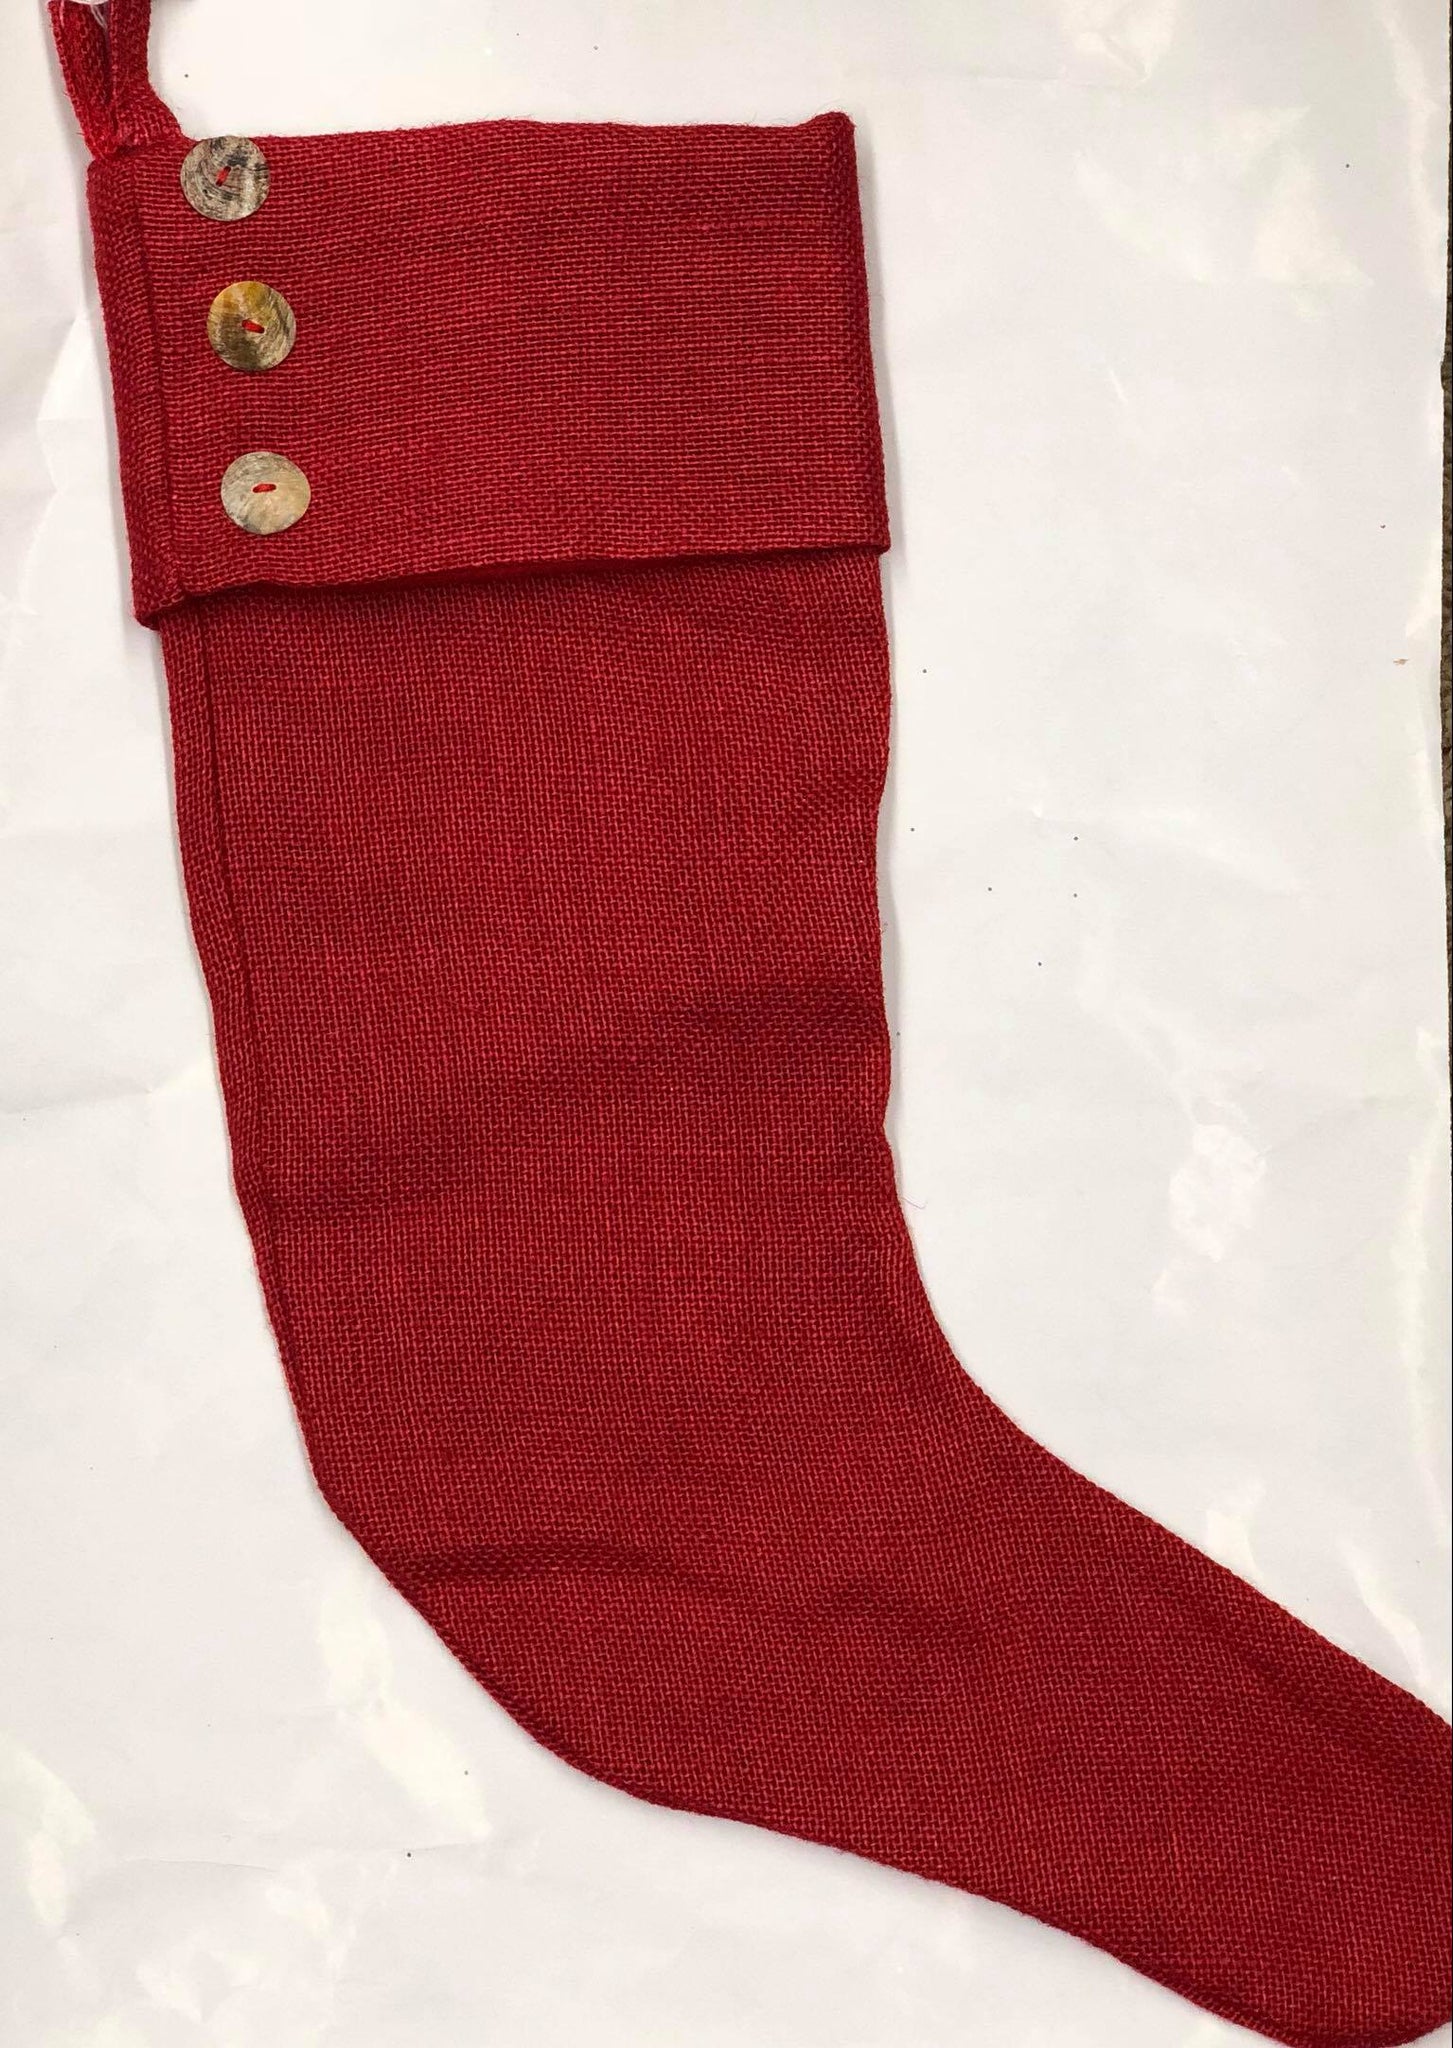 Red burlap stocking